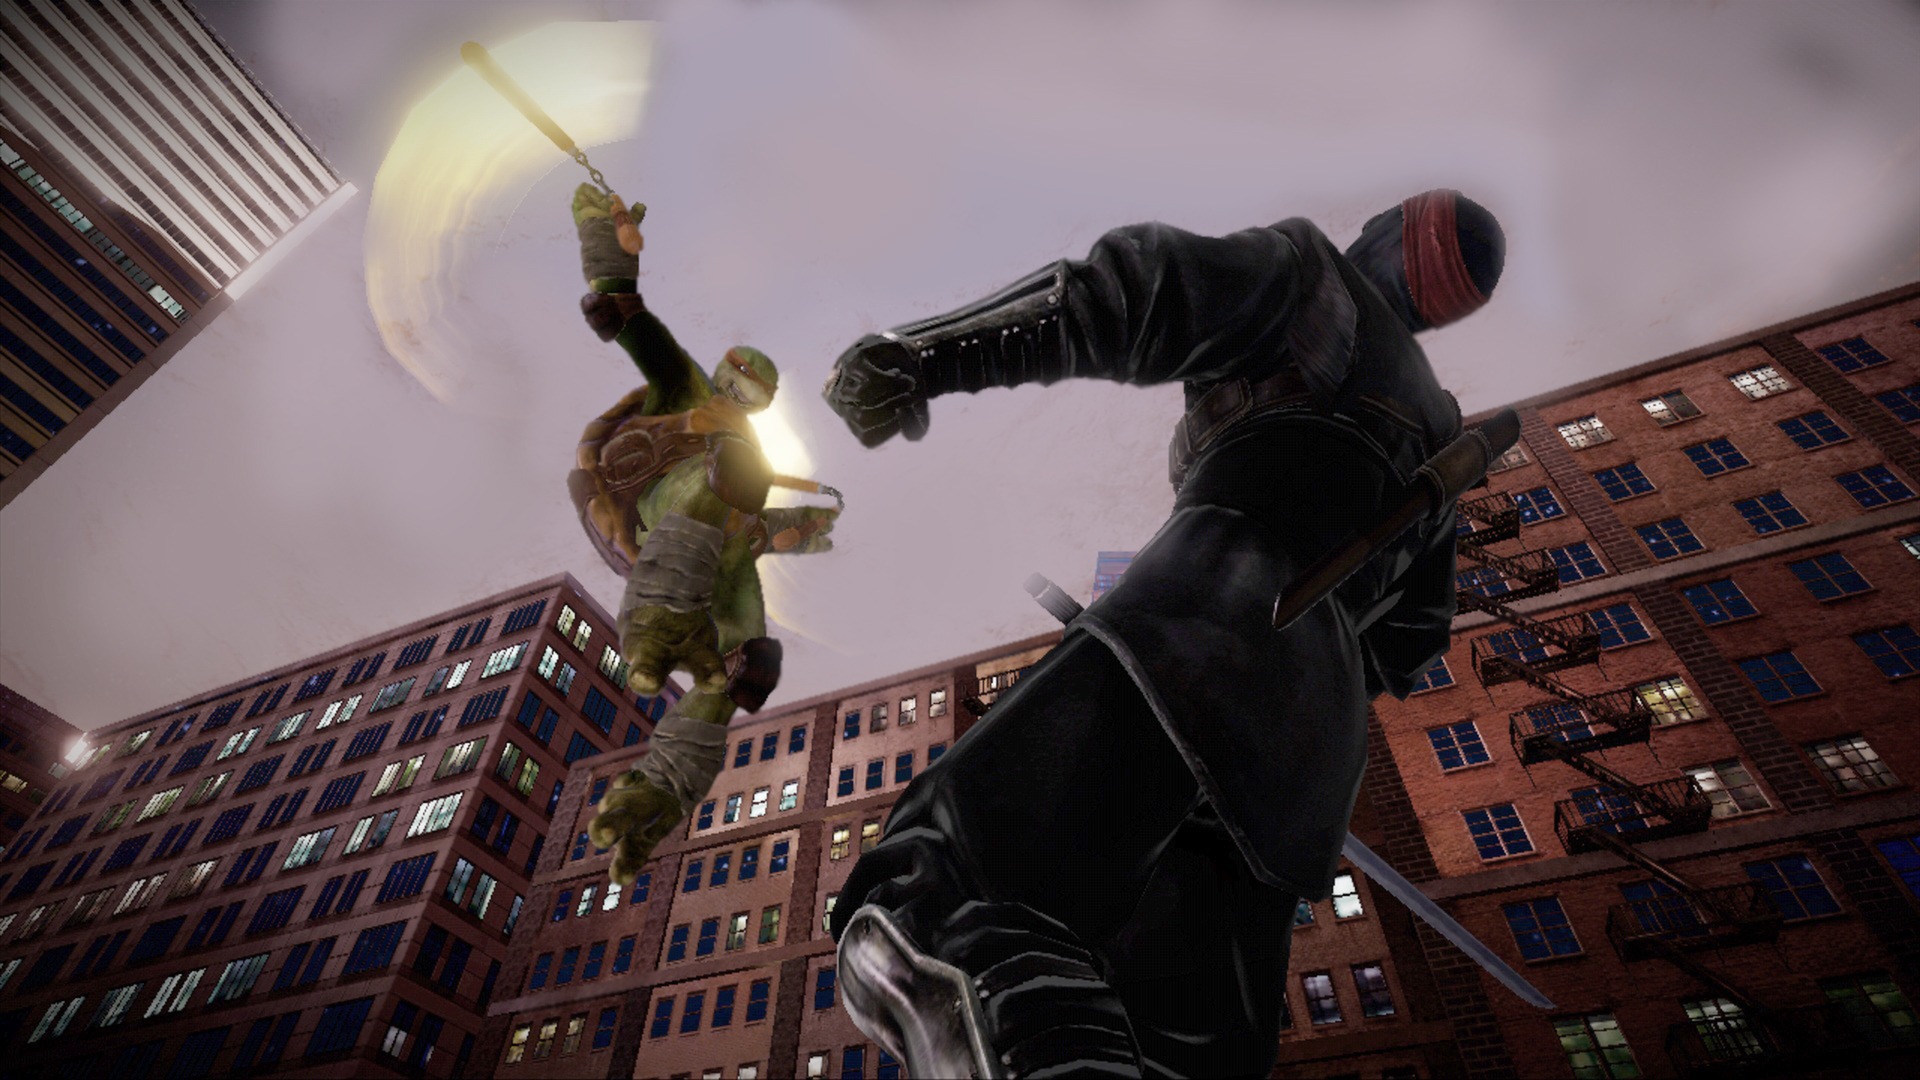 Teenage Mutant Ninja Turtles™: Out of the Shadows on Steam